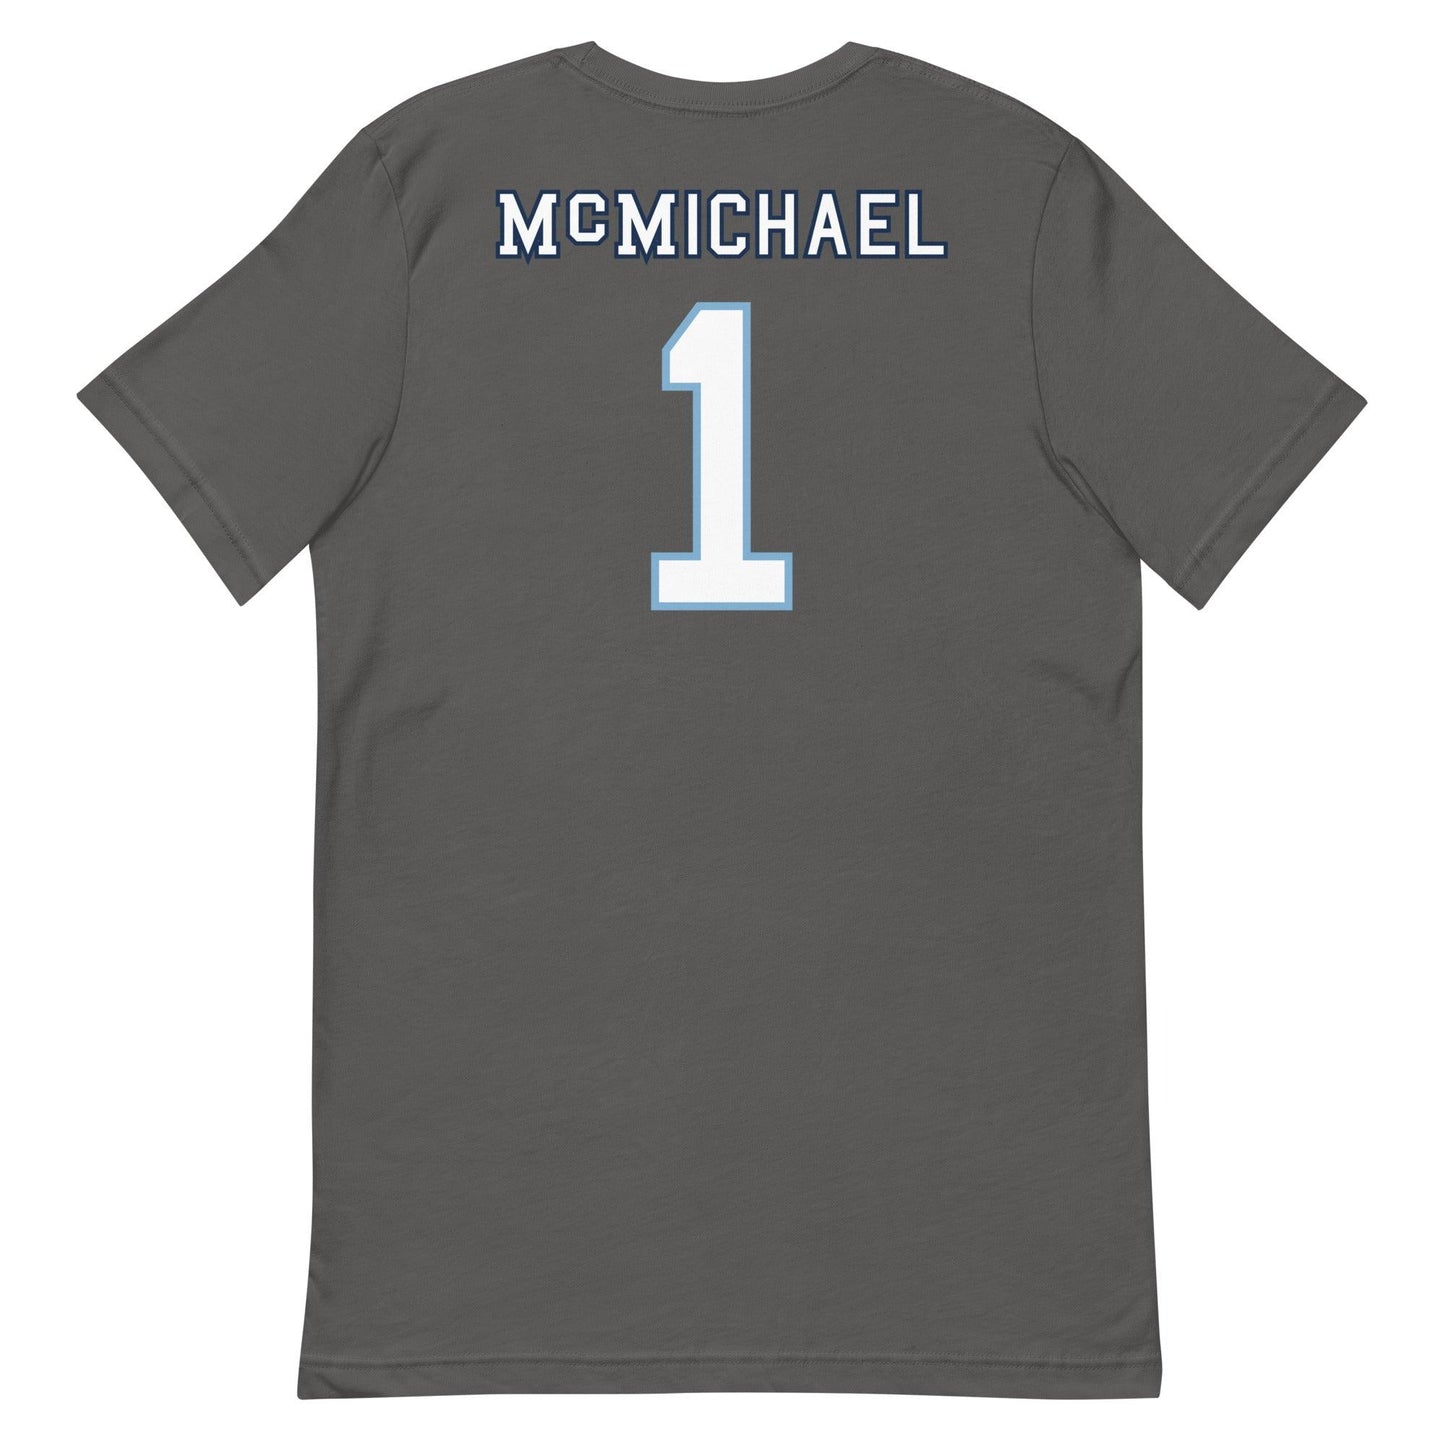 Kyler McMichael "Jersey" t-shirt - Fan Arch